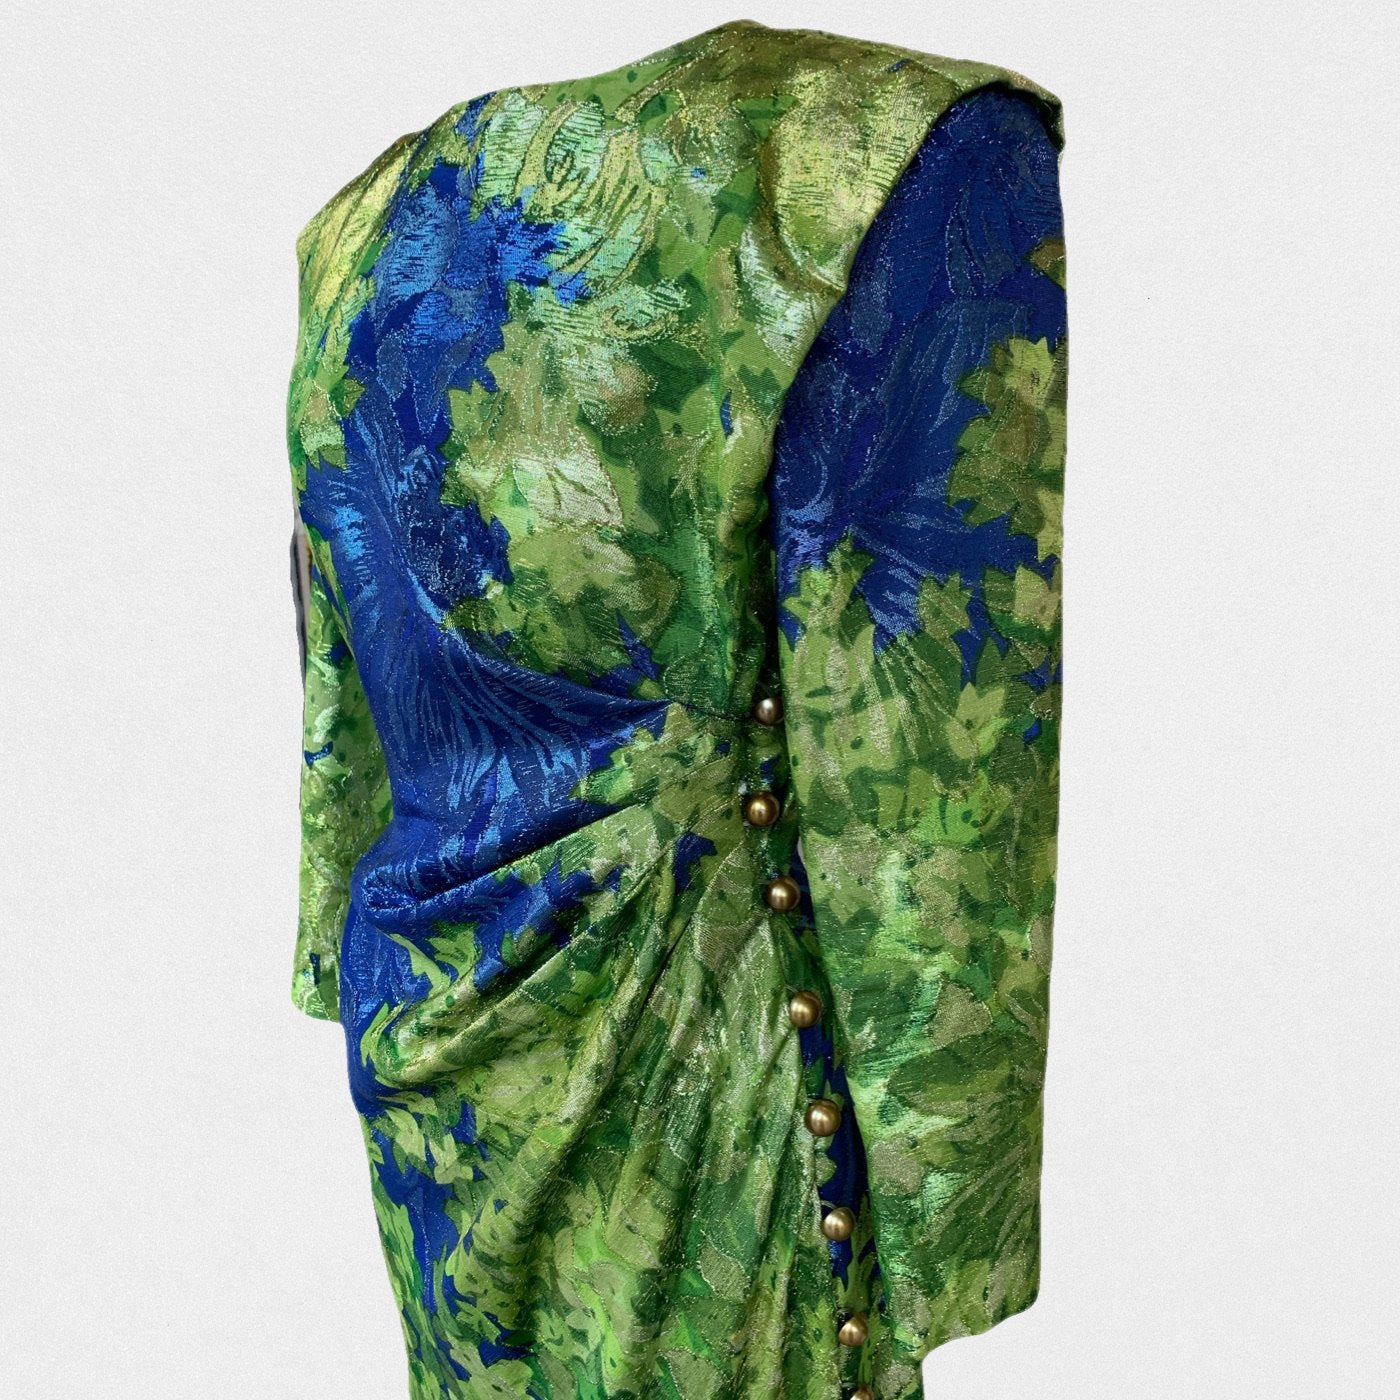 Lysis vintage Yves Saint Laurent Rive Gauche dress - M - 1989